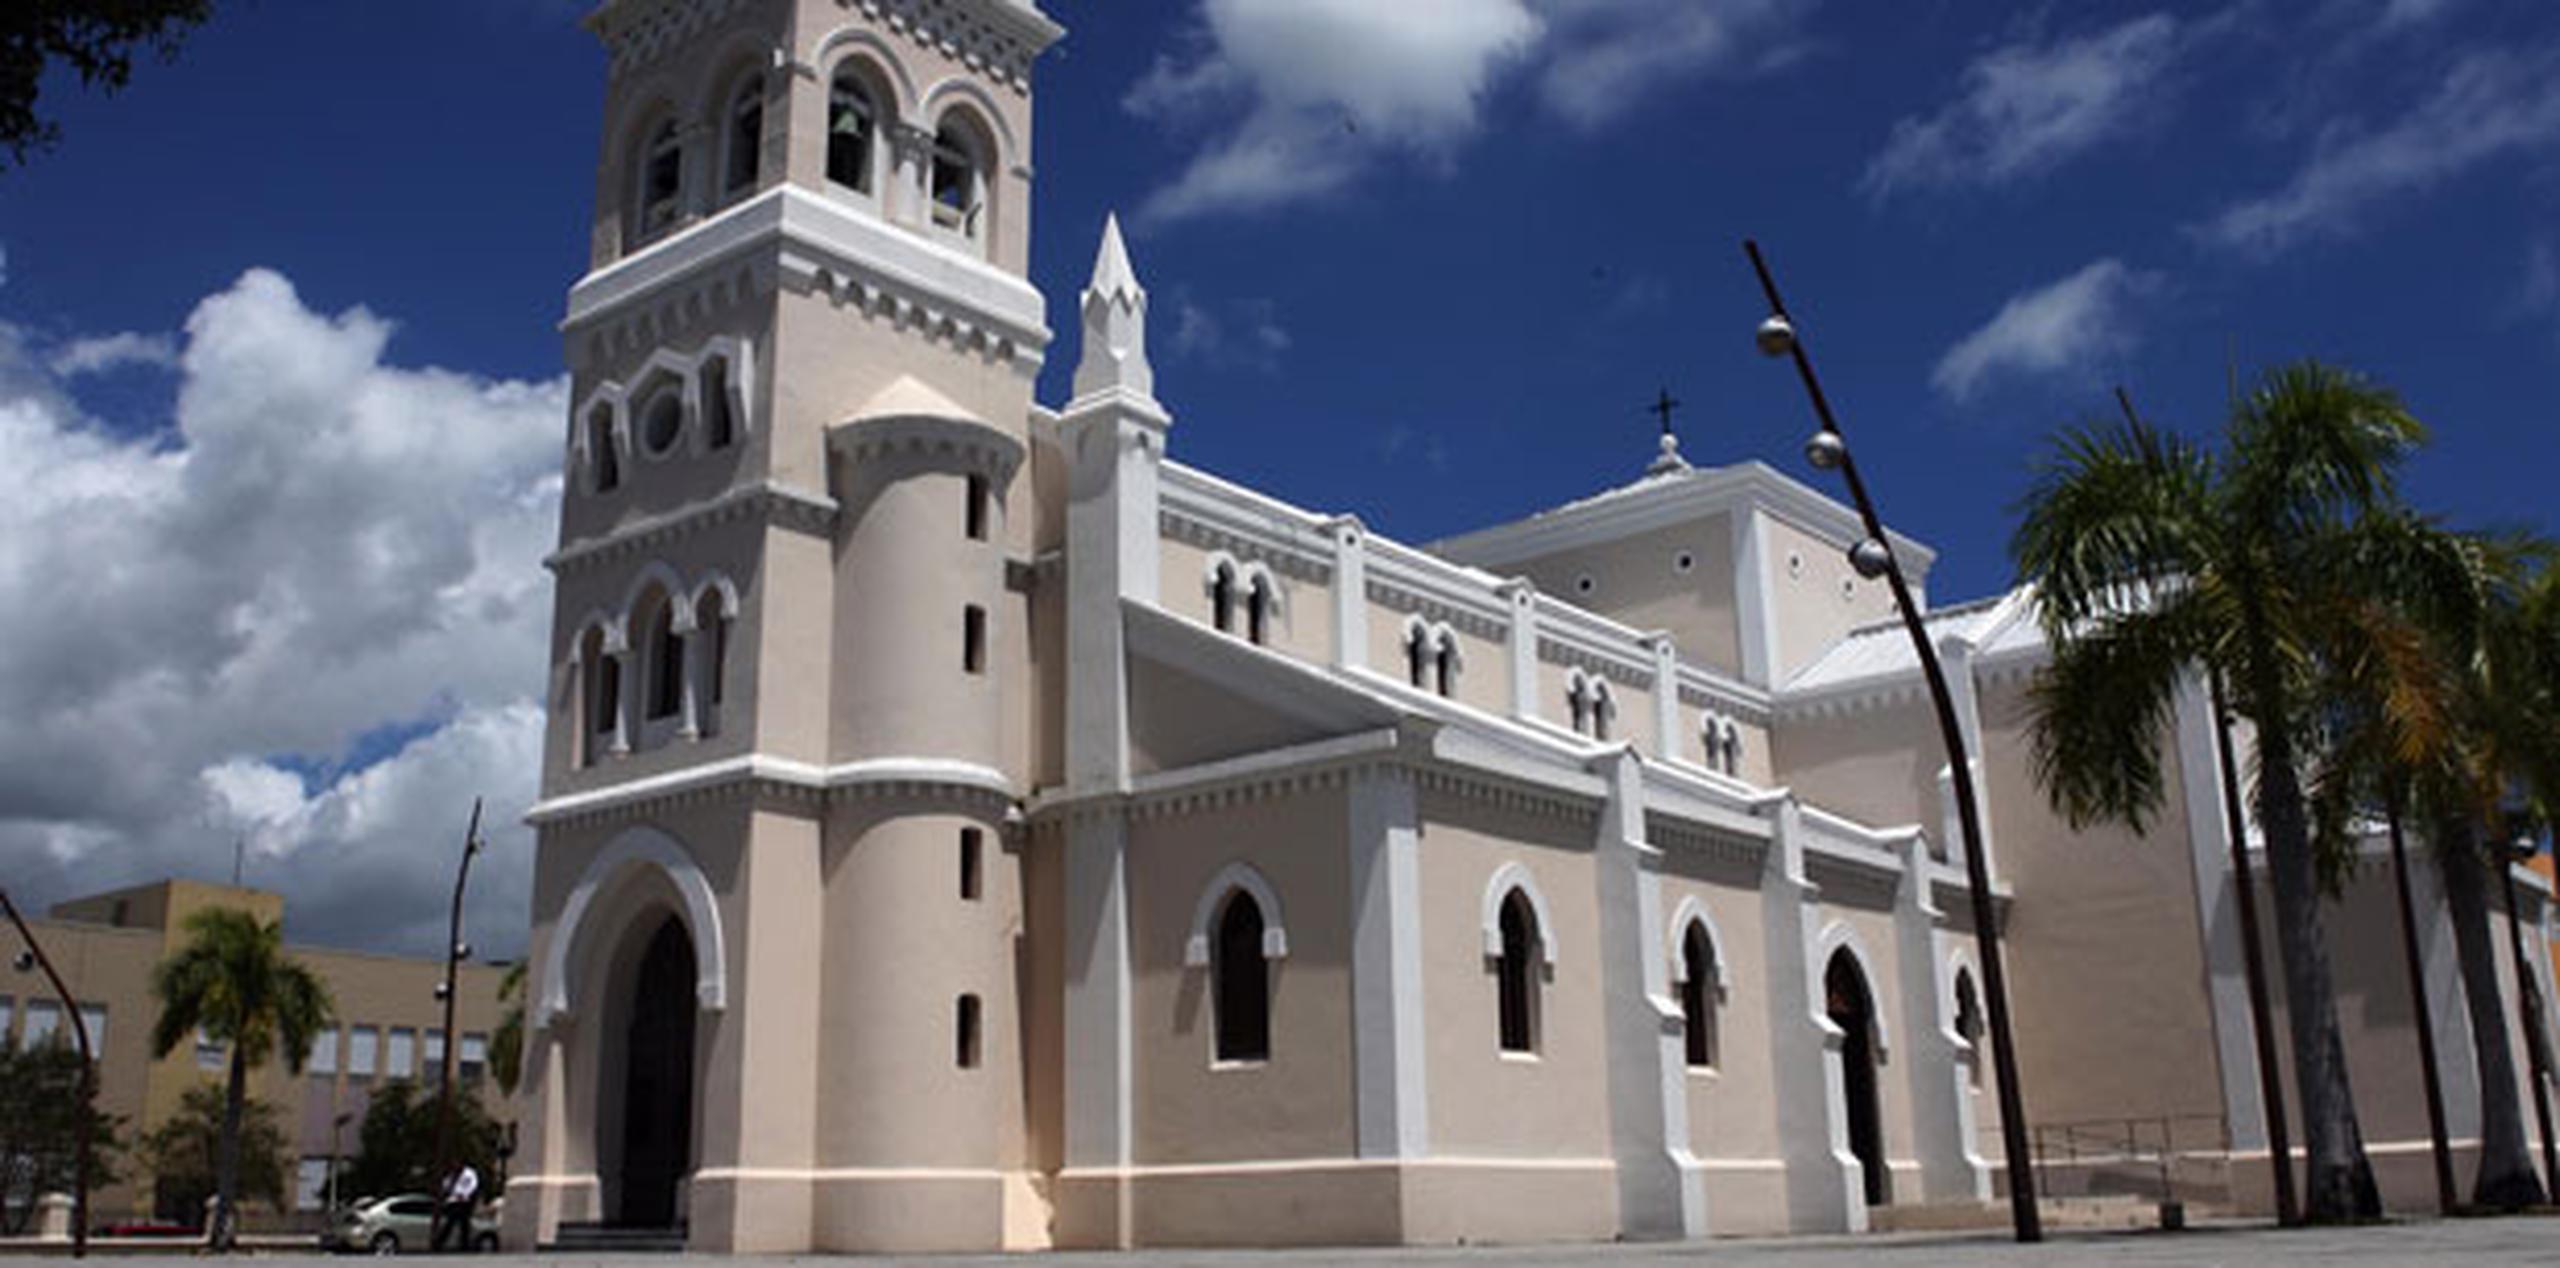 El asalto fue perpetrado en la iglesia Dulce Nombre de Jesús, en la plaza pública de Humacao. (Archivo)